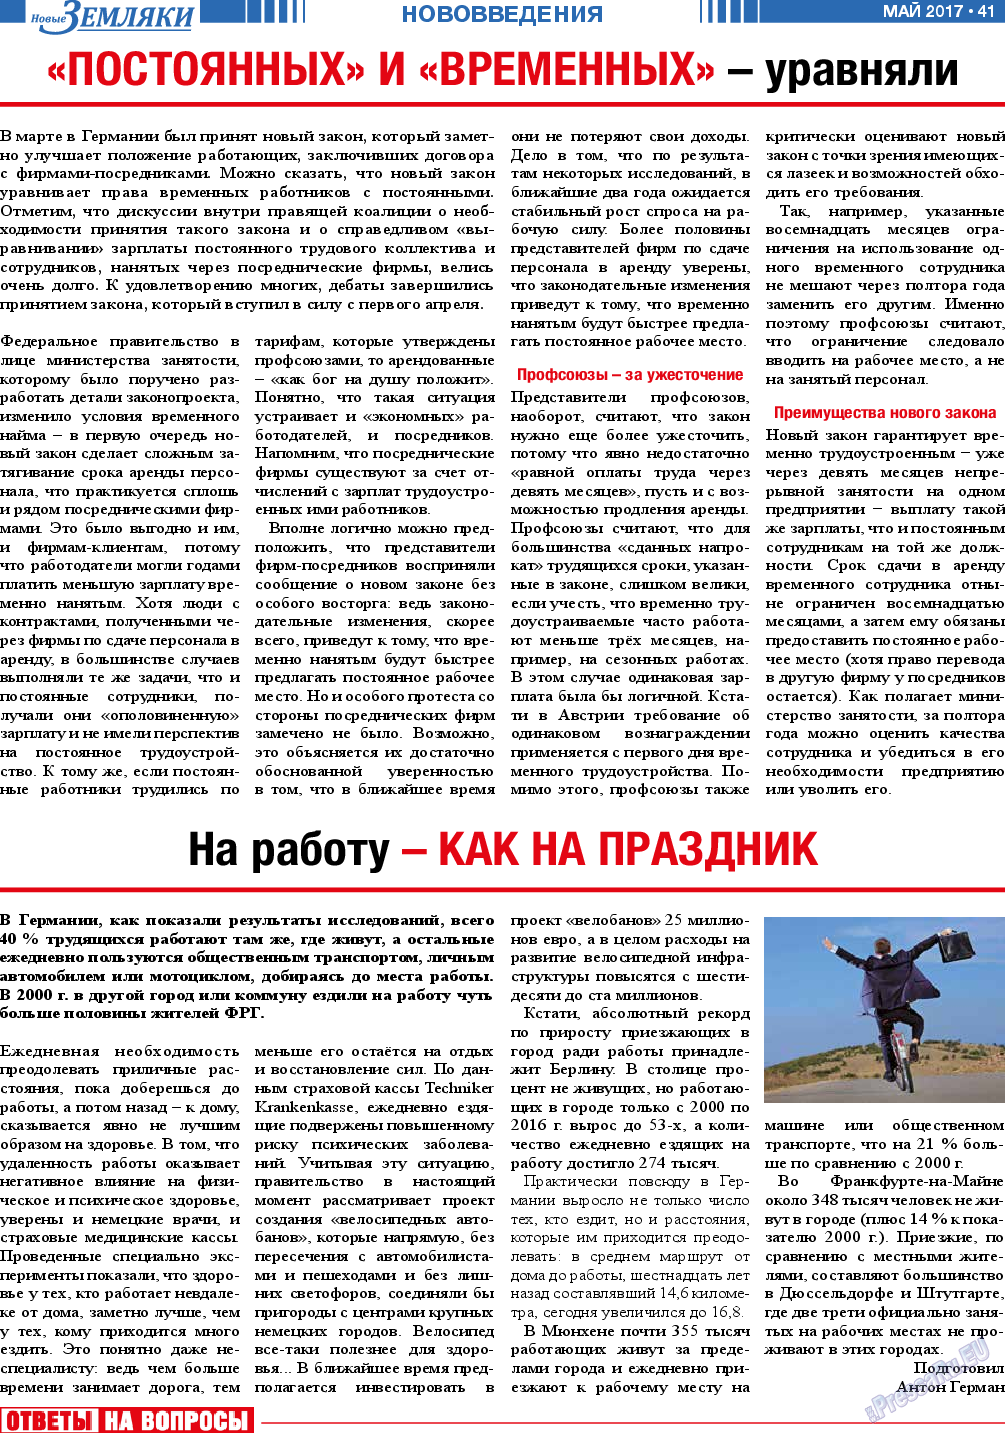 Новые Земляки, газета. 2017 №5 стр.41